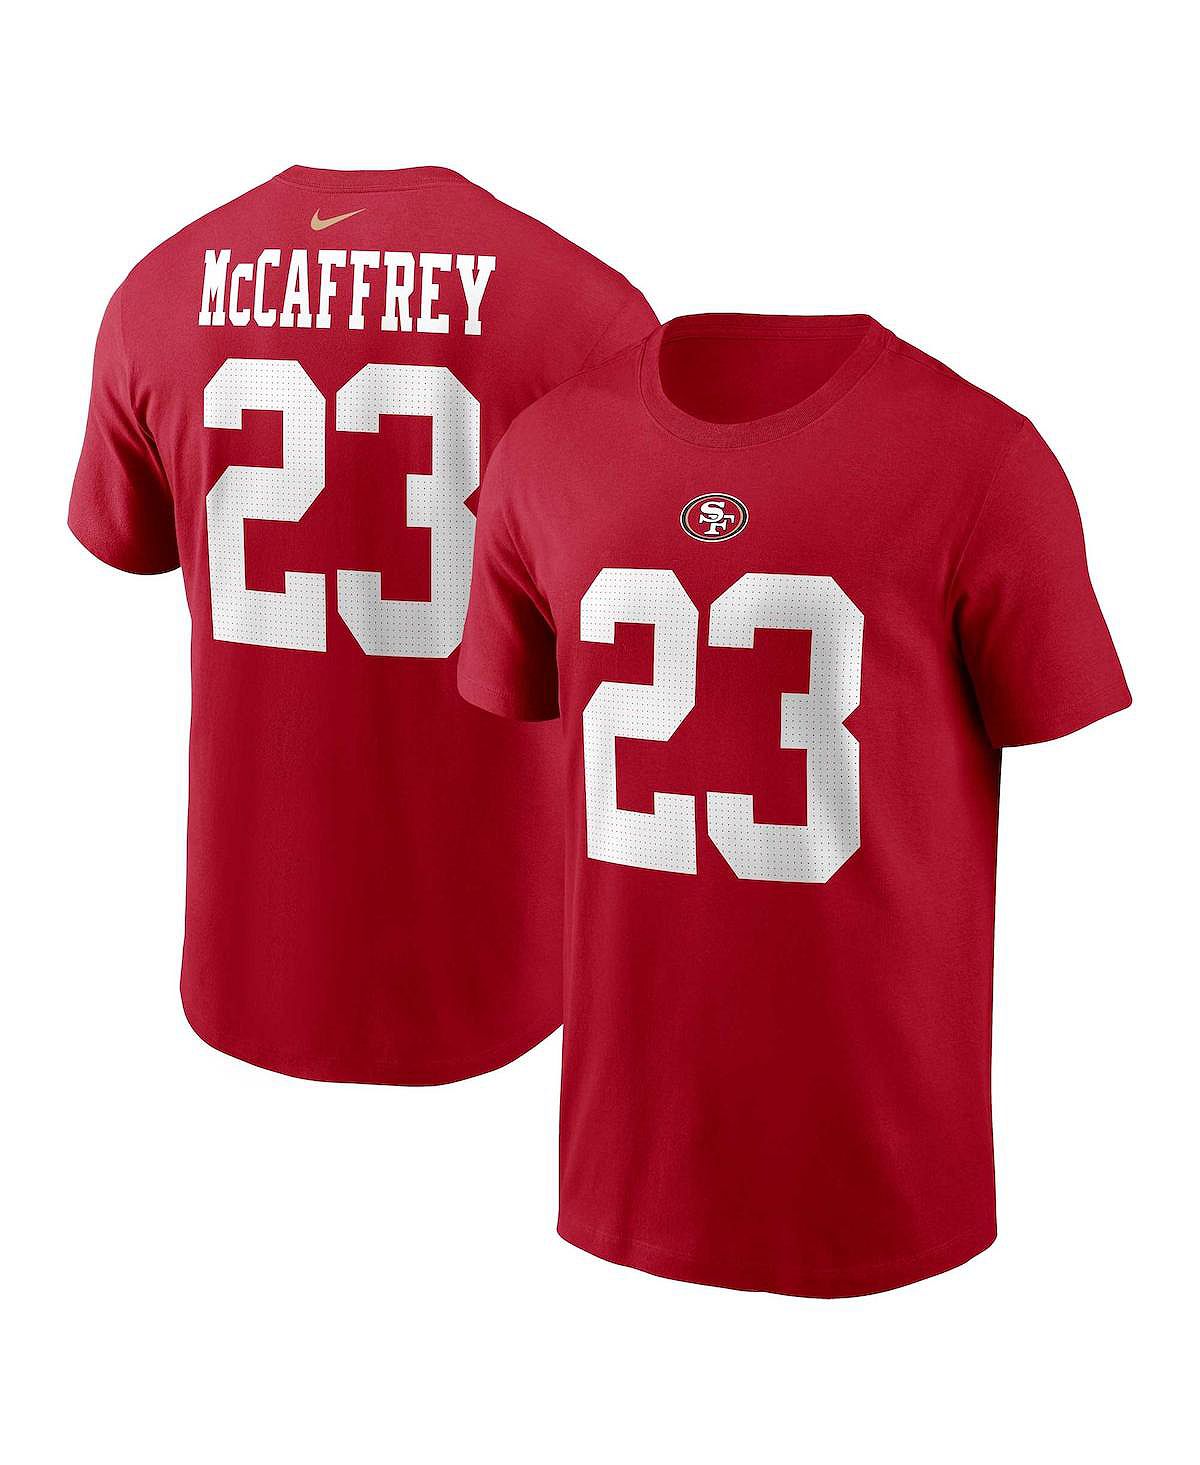 Мужская футболка Christian McCaffrey Scarlet San Francisco 49ers с именем и номером игрока Nike мужская черная футболка с неоновым рисунком san francisco 49ers pro standard